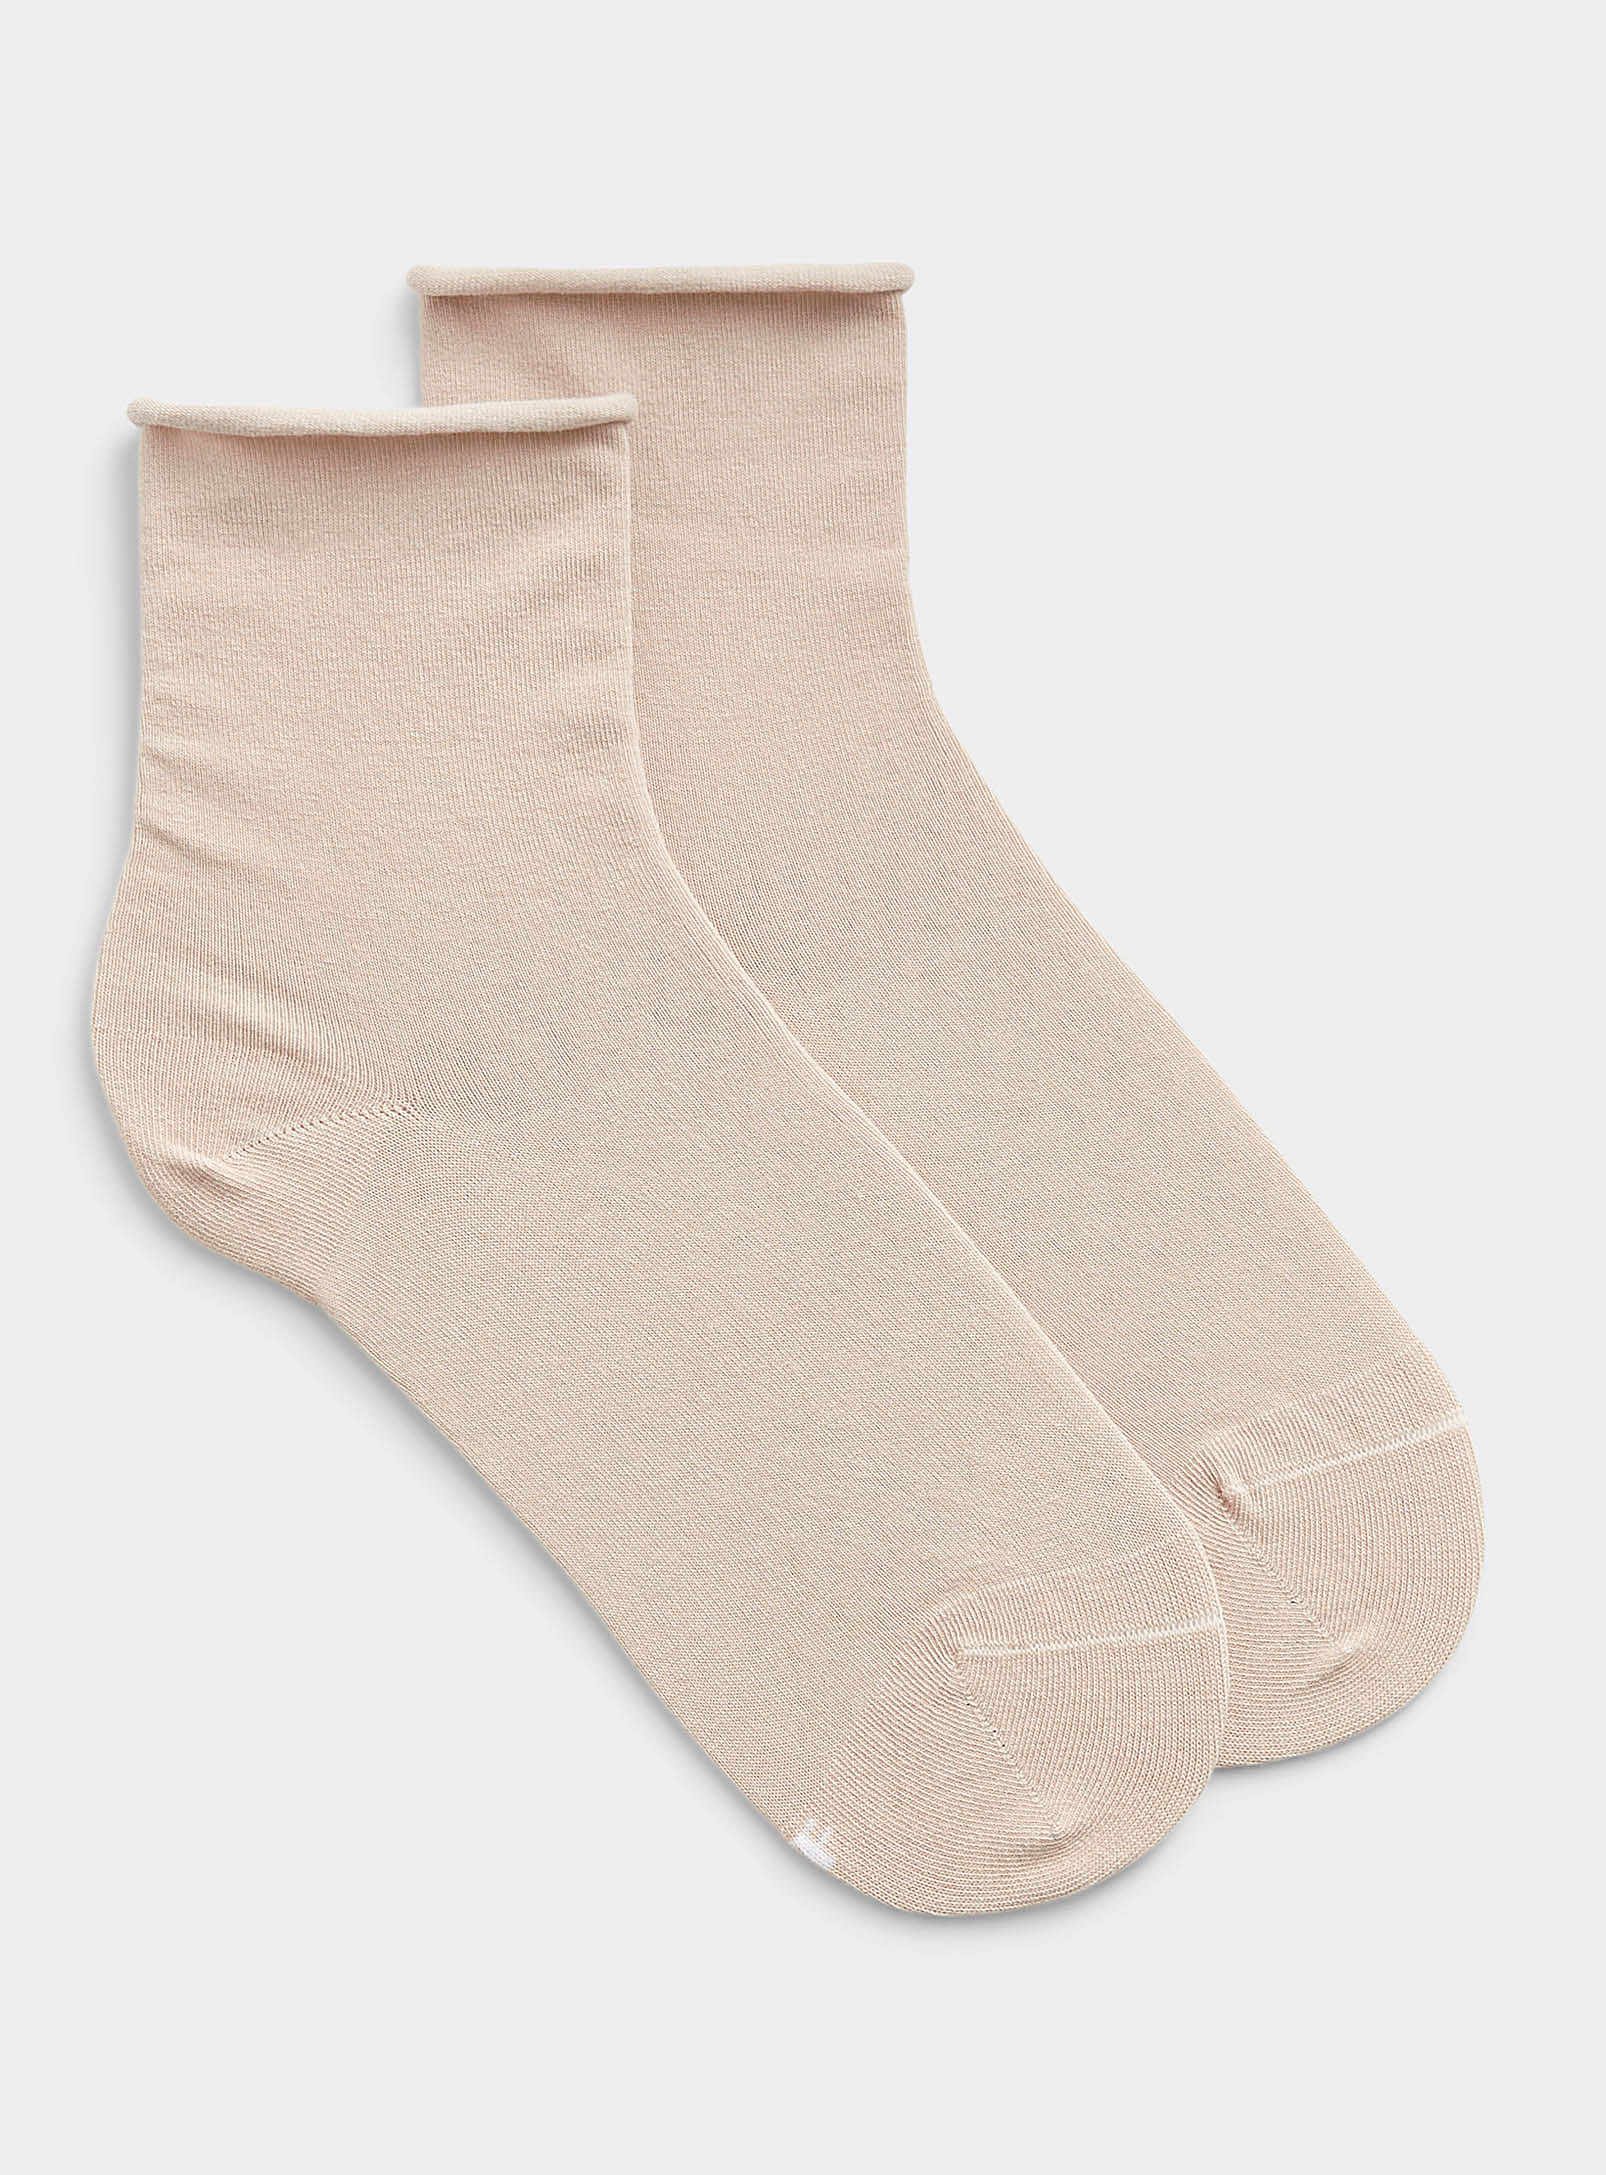 Bleuforêt Velvety Cotton Socks In Ecru/linen